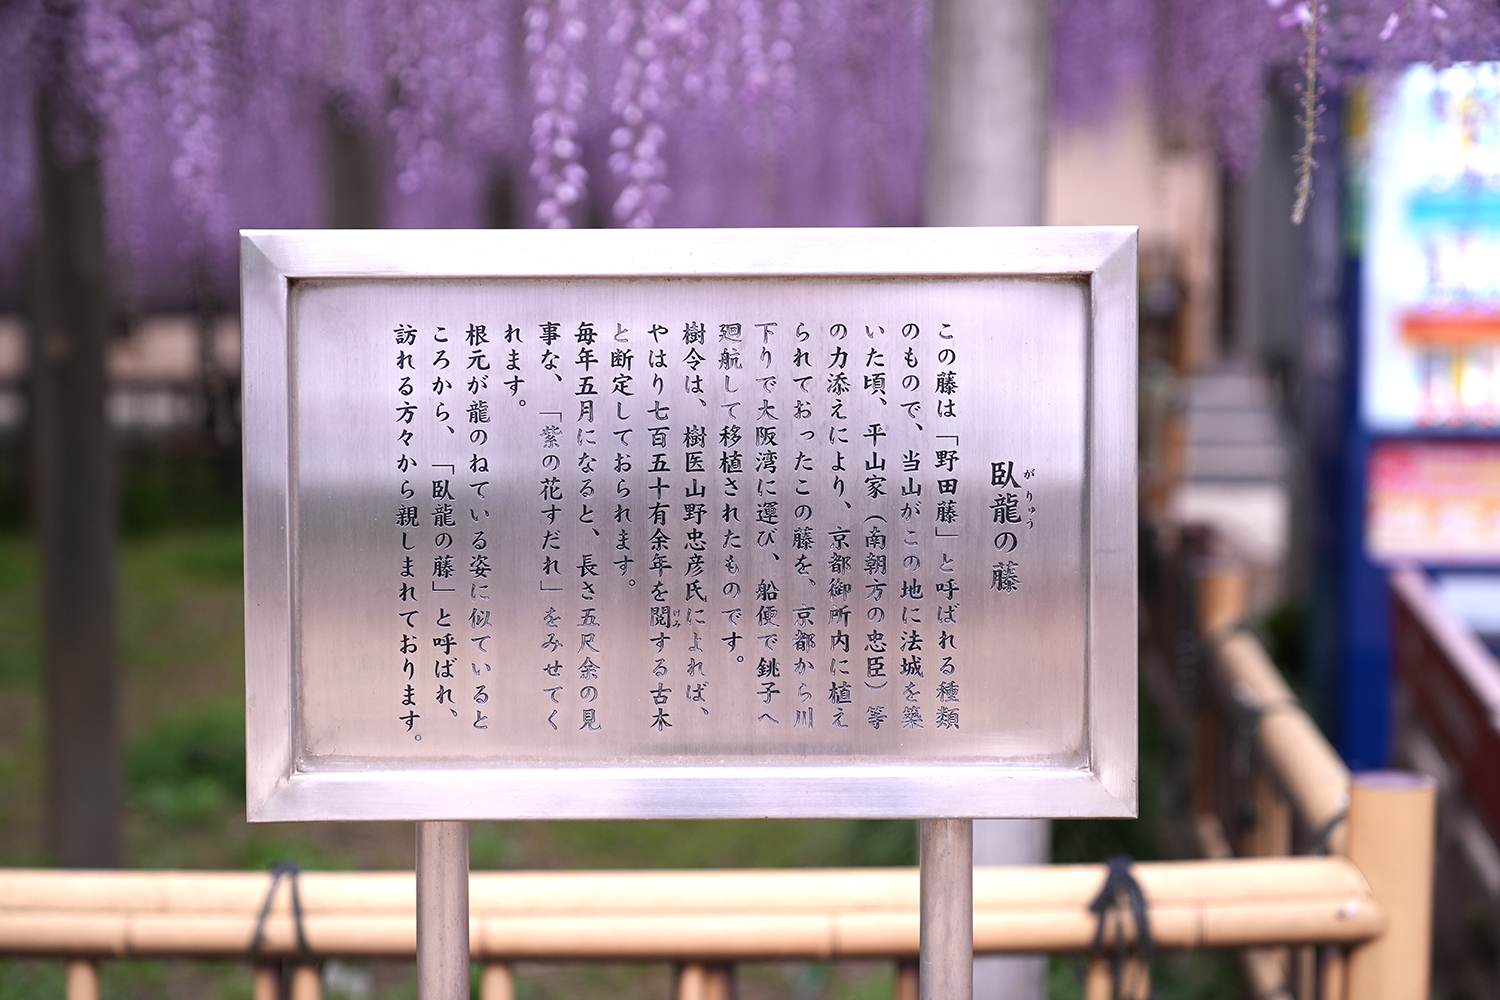 妙福寺の臥龍の藤の説明書きの写真